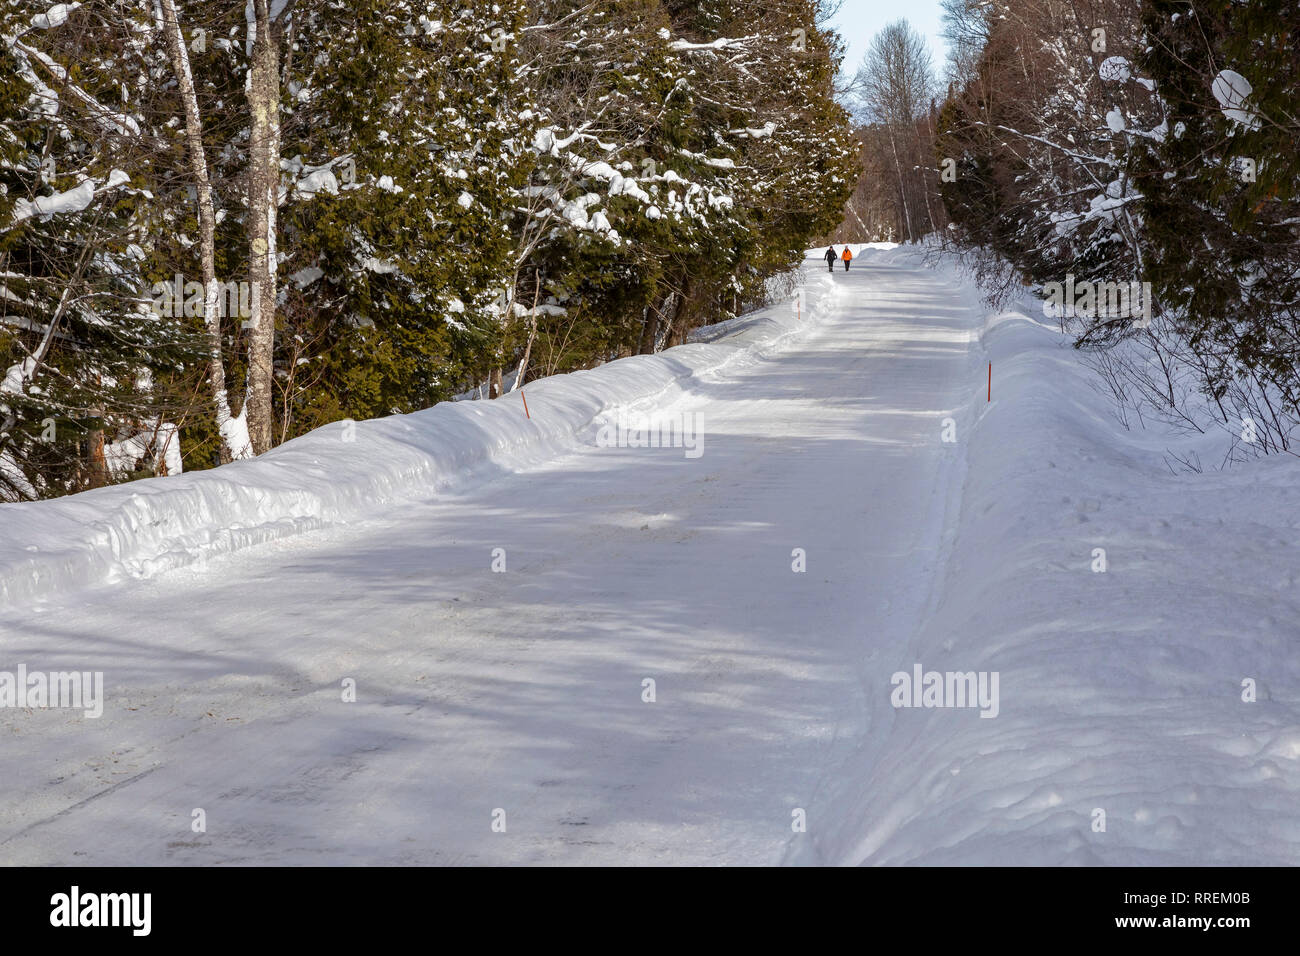 Munising, Michigan - deux personnes marcher le long Sand Point Road en hiver, dans la région de Pictured Rocks National Lakeshore. Banque D'Images